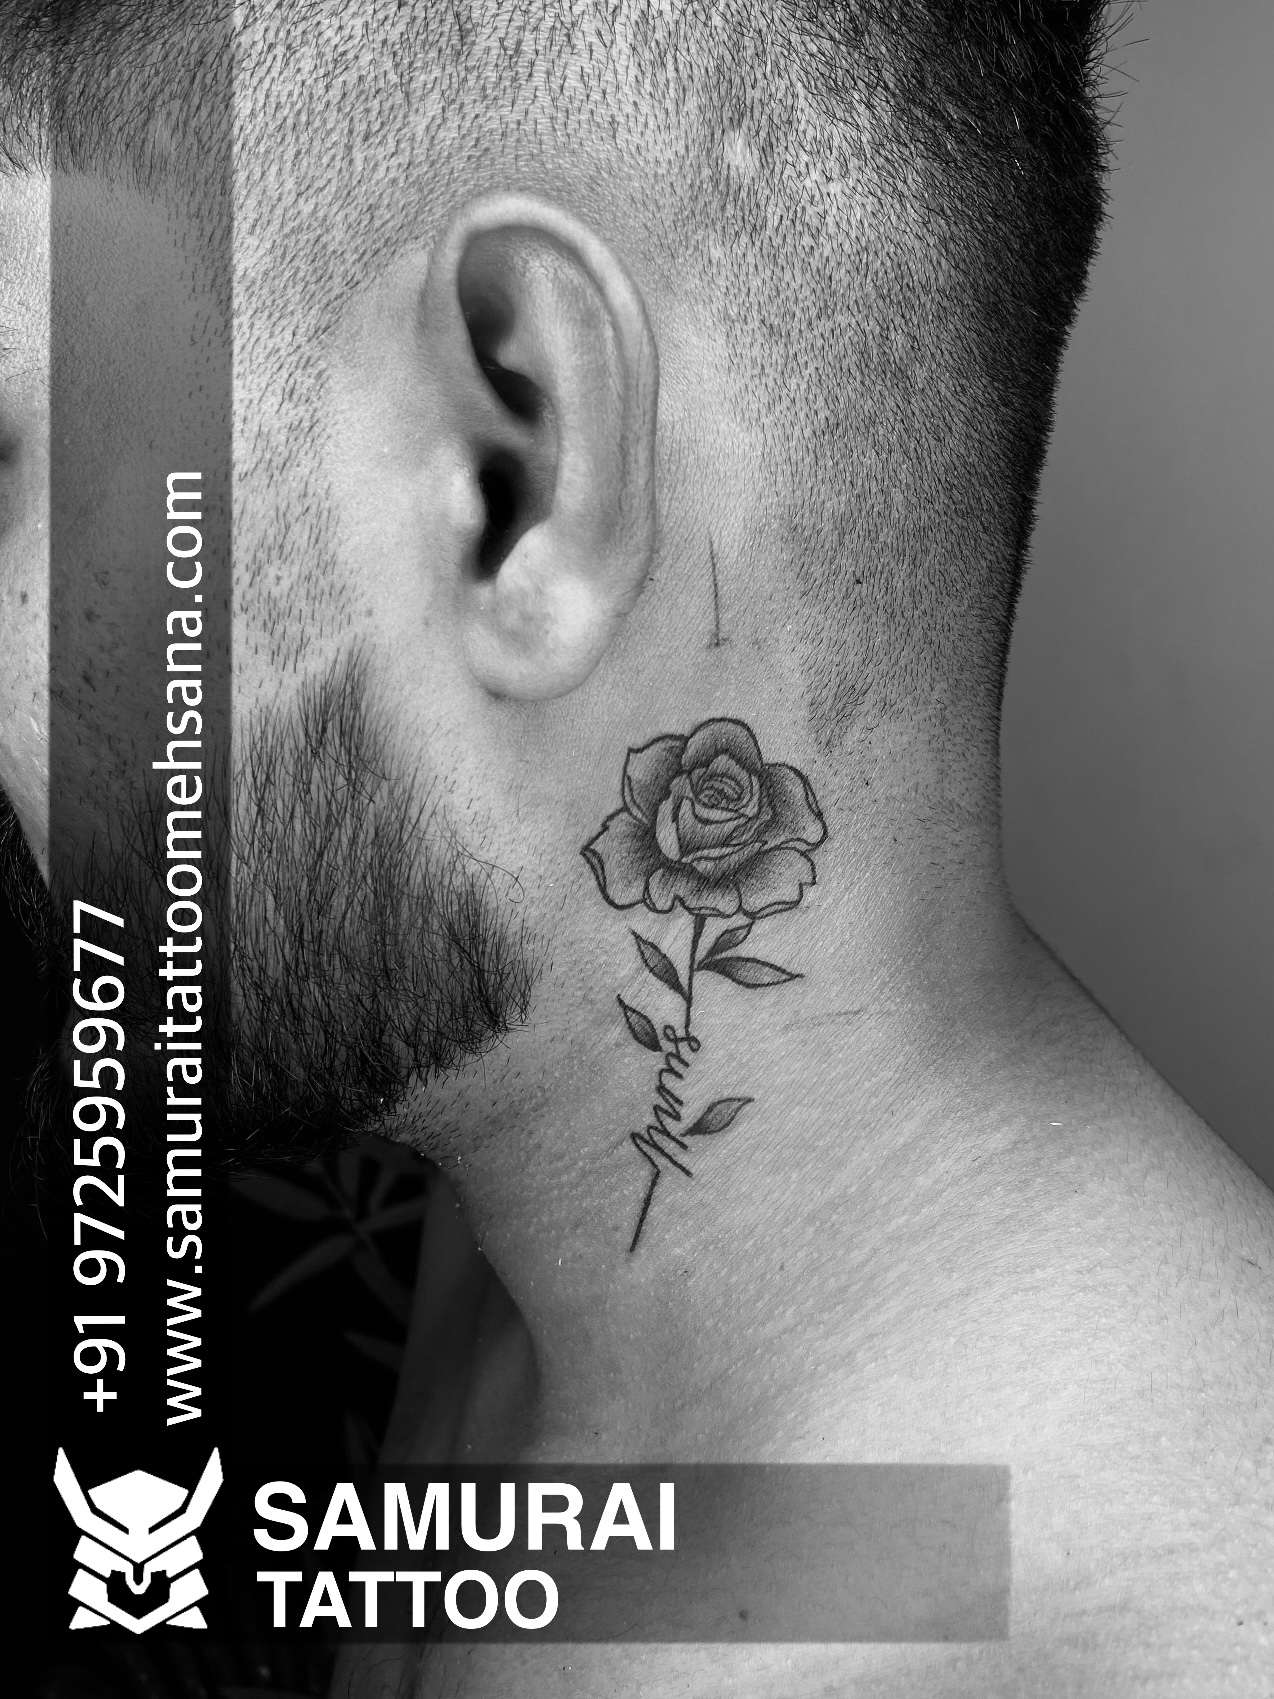 Serenity Ink Tattoos  Ear rose tattoo done by our artist Myashley   Artist myashleyb04  minimalistattoo eartattoo tattoolife  tattoosforgirls tattoosforwomen tattooidea tattoodaily  tattoosofinstagram tattoosofinstagram tattoos tattoo 